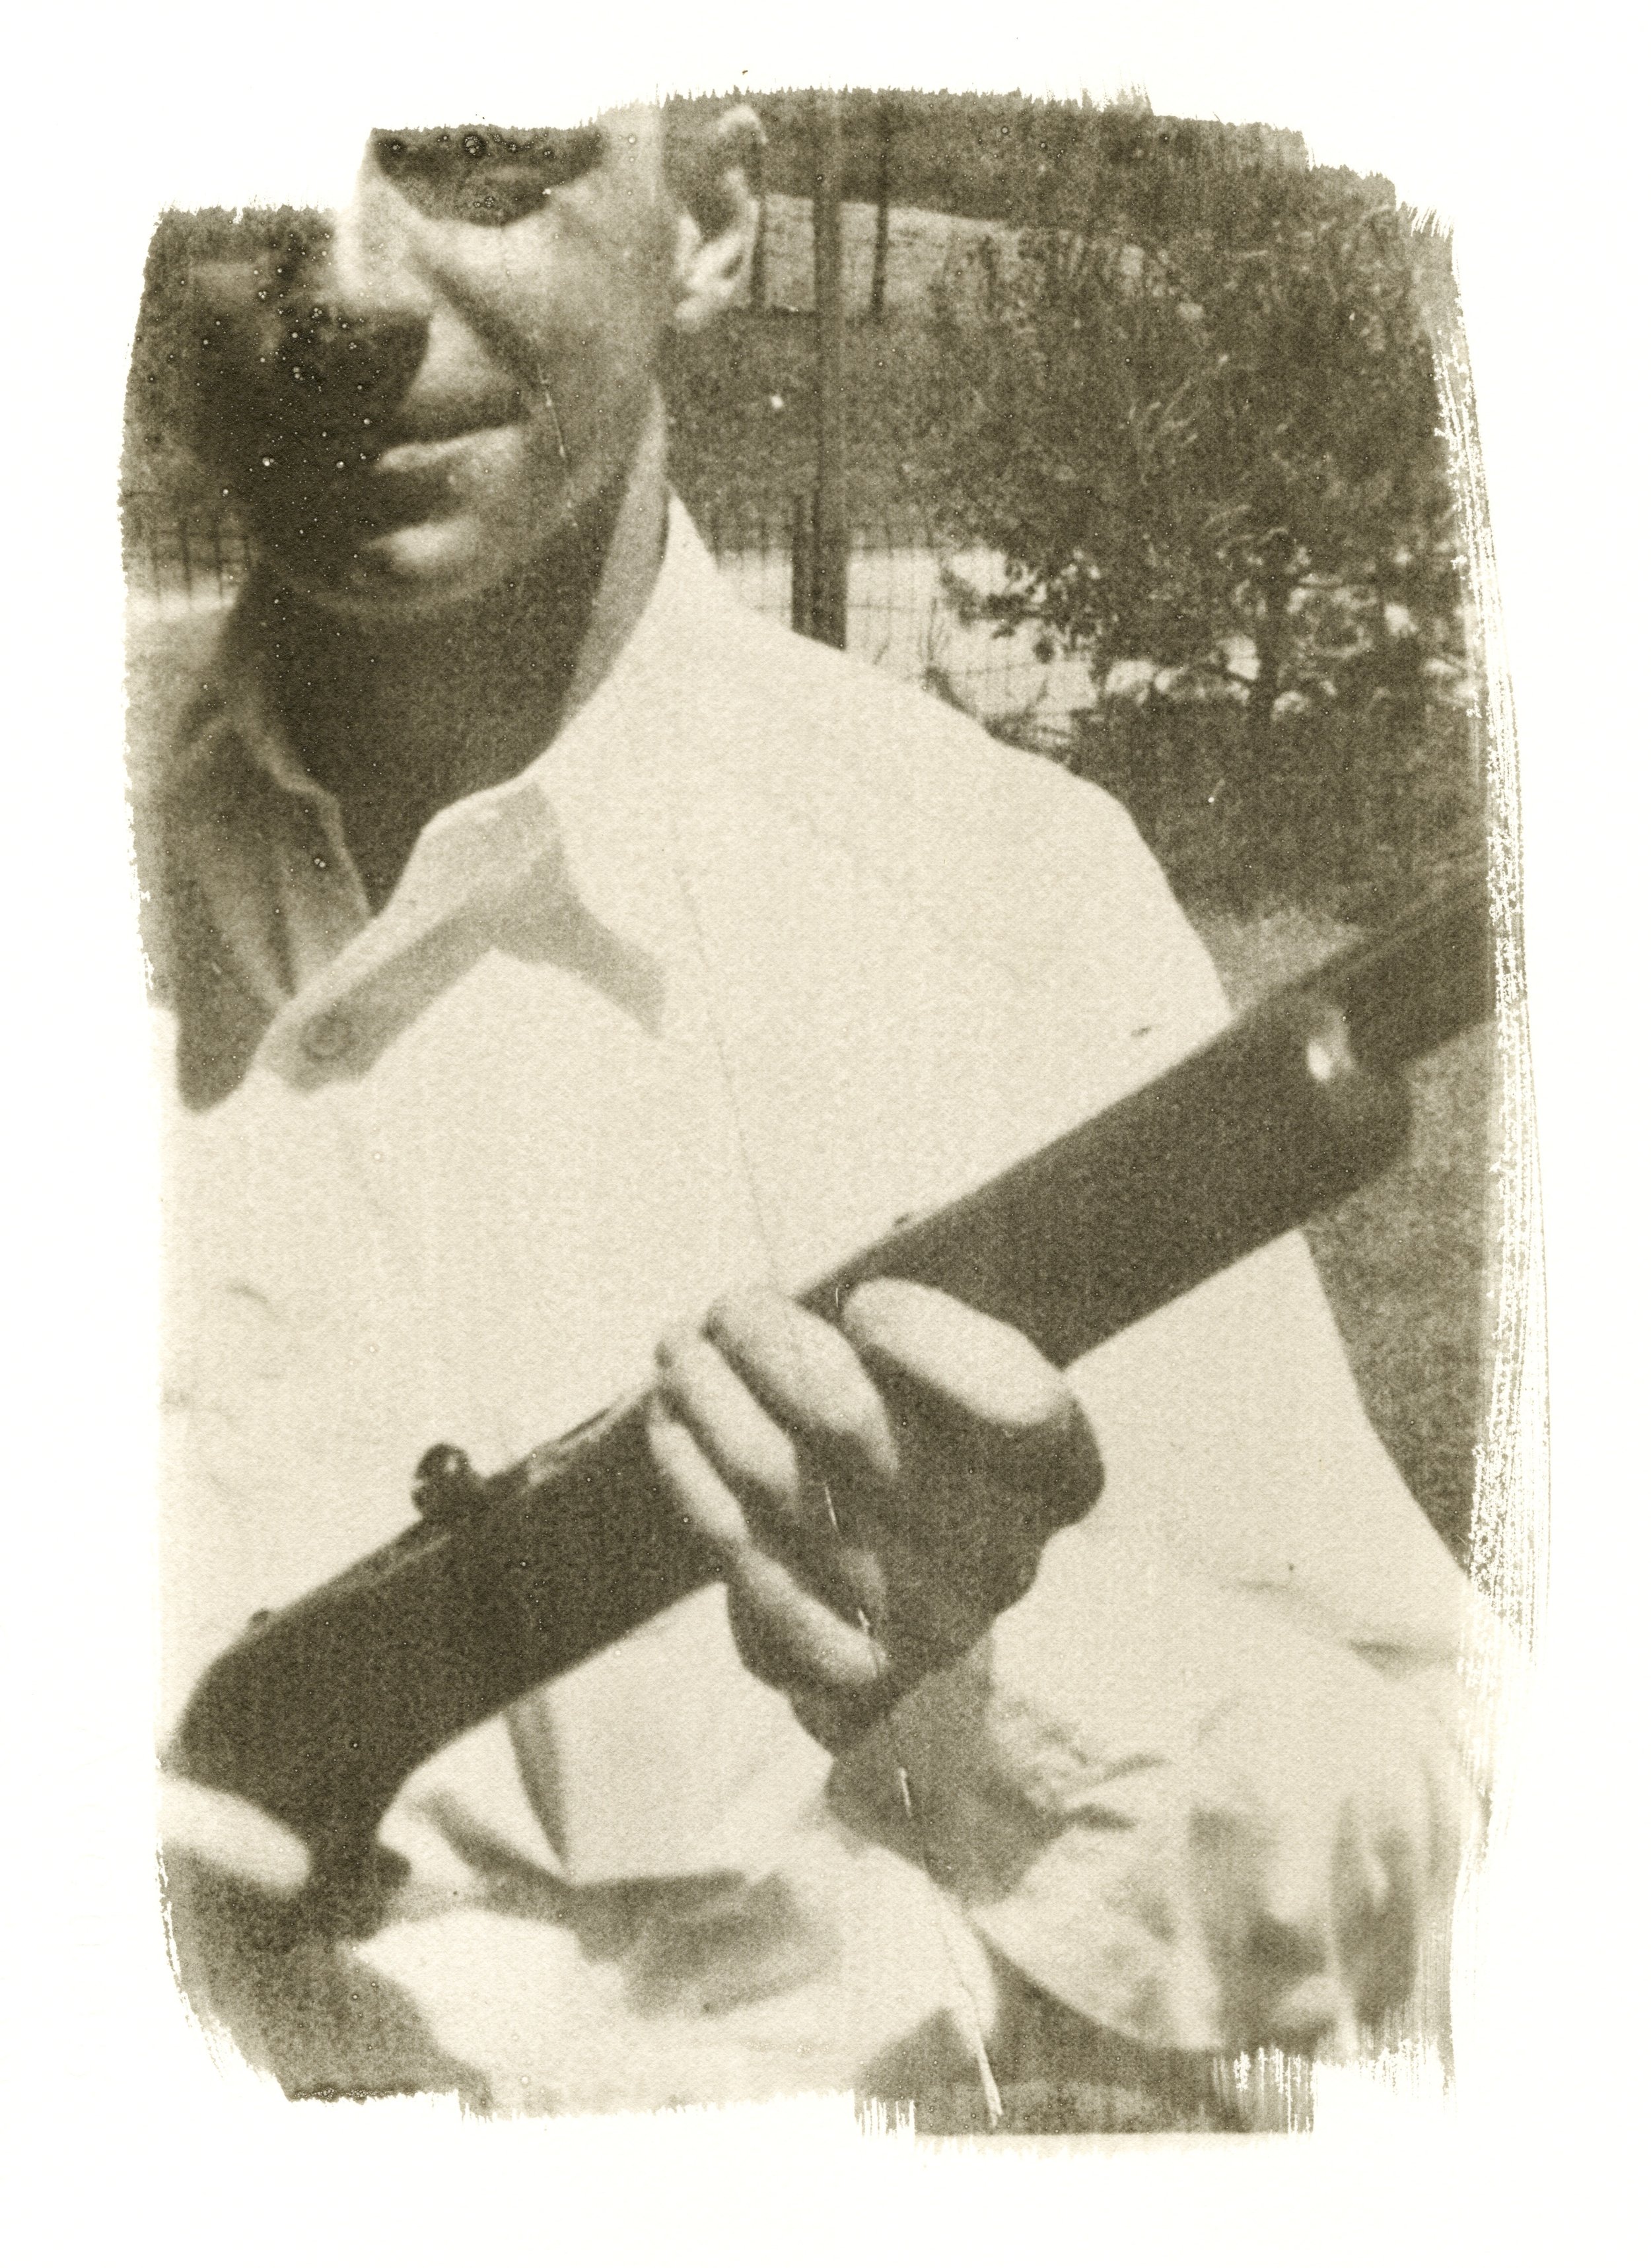 Man with a Gun, 1950's